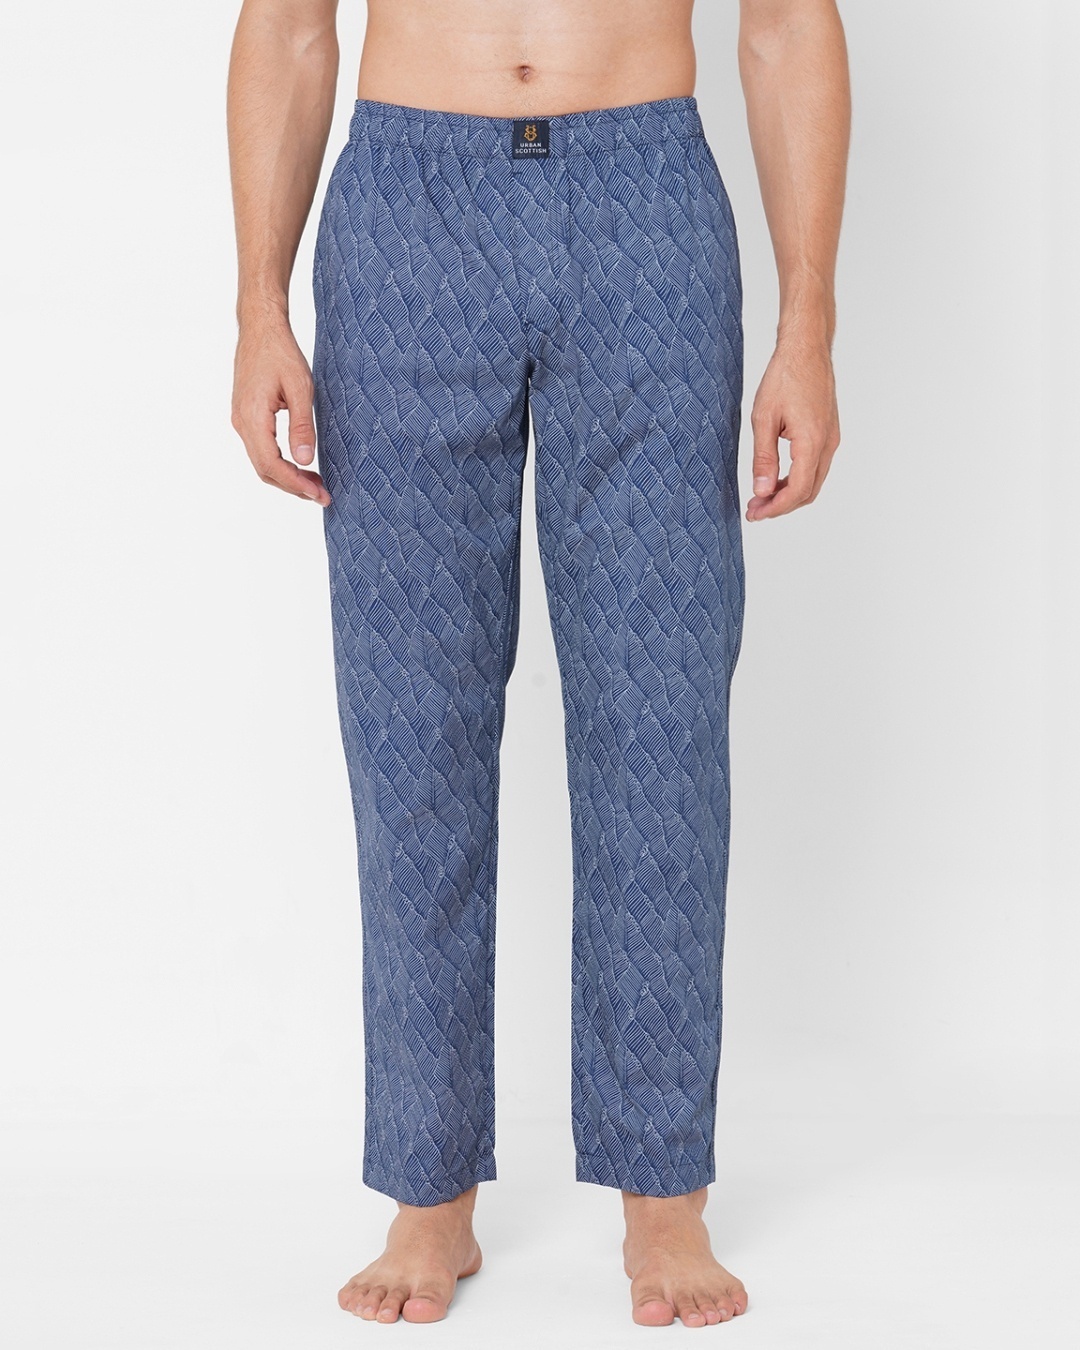 Men's Organic Cotton Drawstring Lounge Pants - S/M, L/XL, 2XL/3XL |  EcoPlanet / EcoChoices